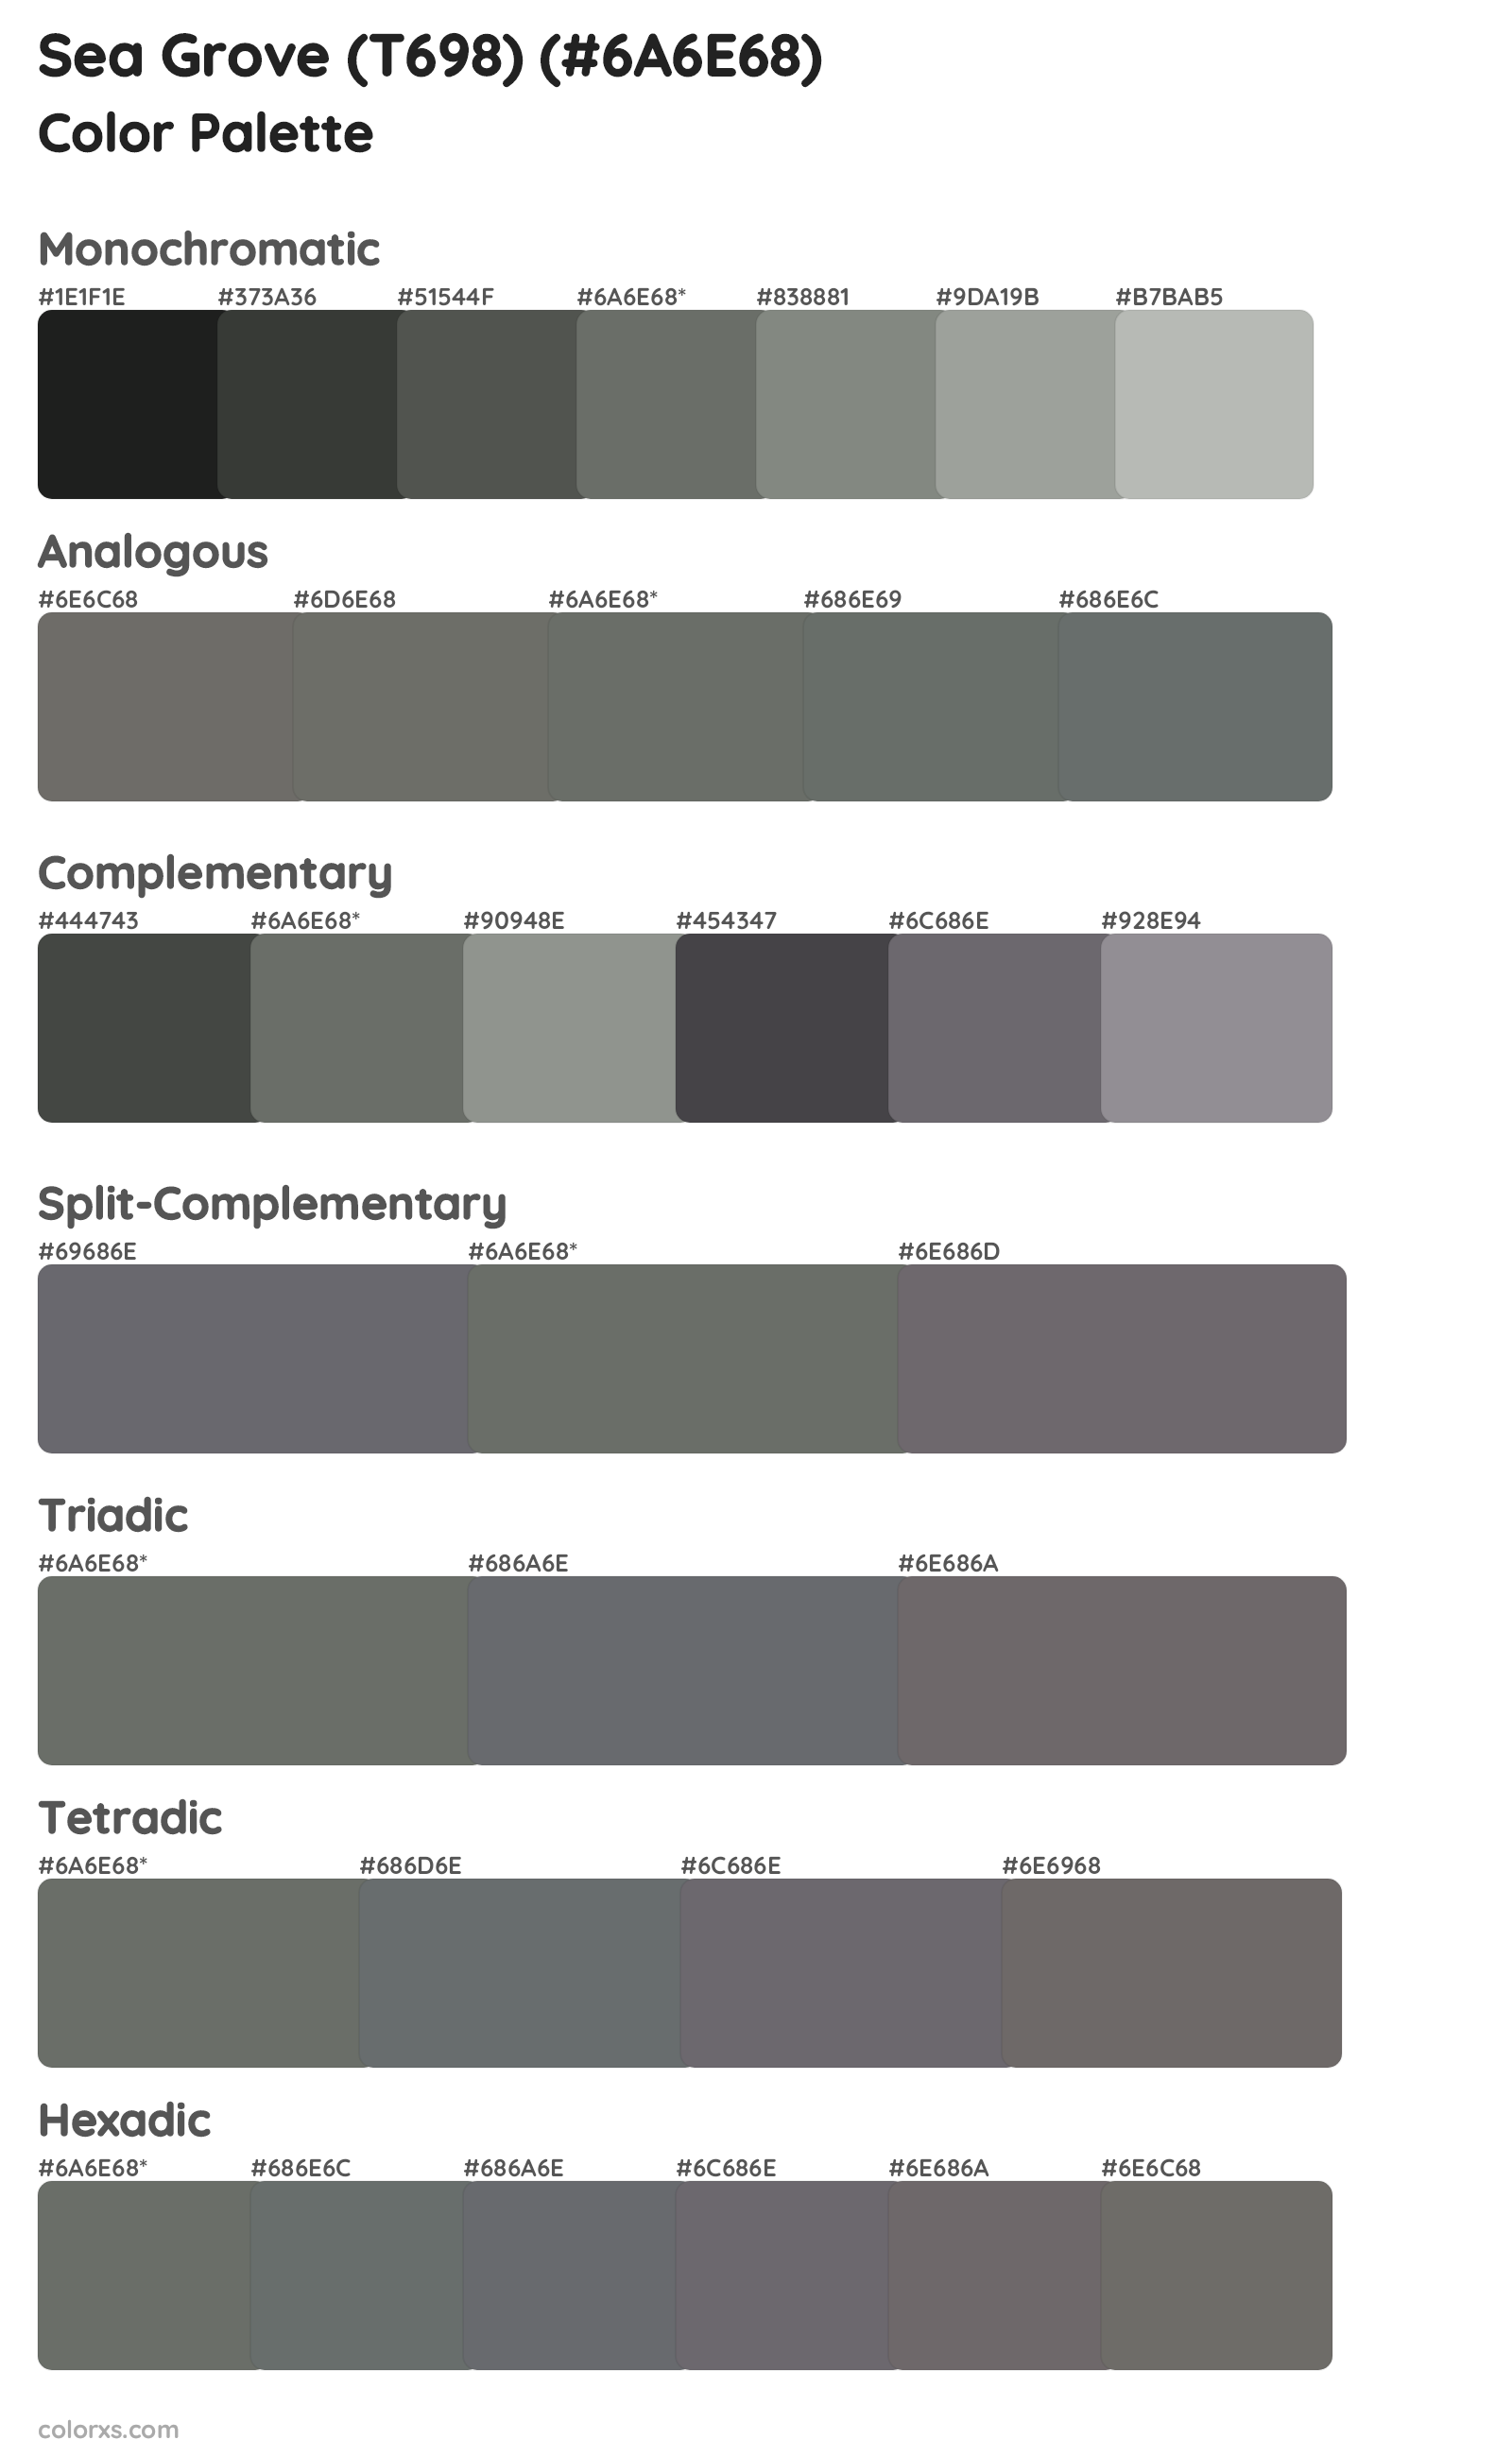 Sea Grove (T698) Color Scheme Palettes